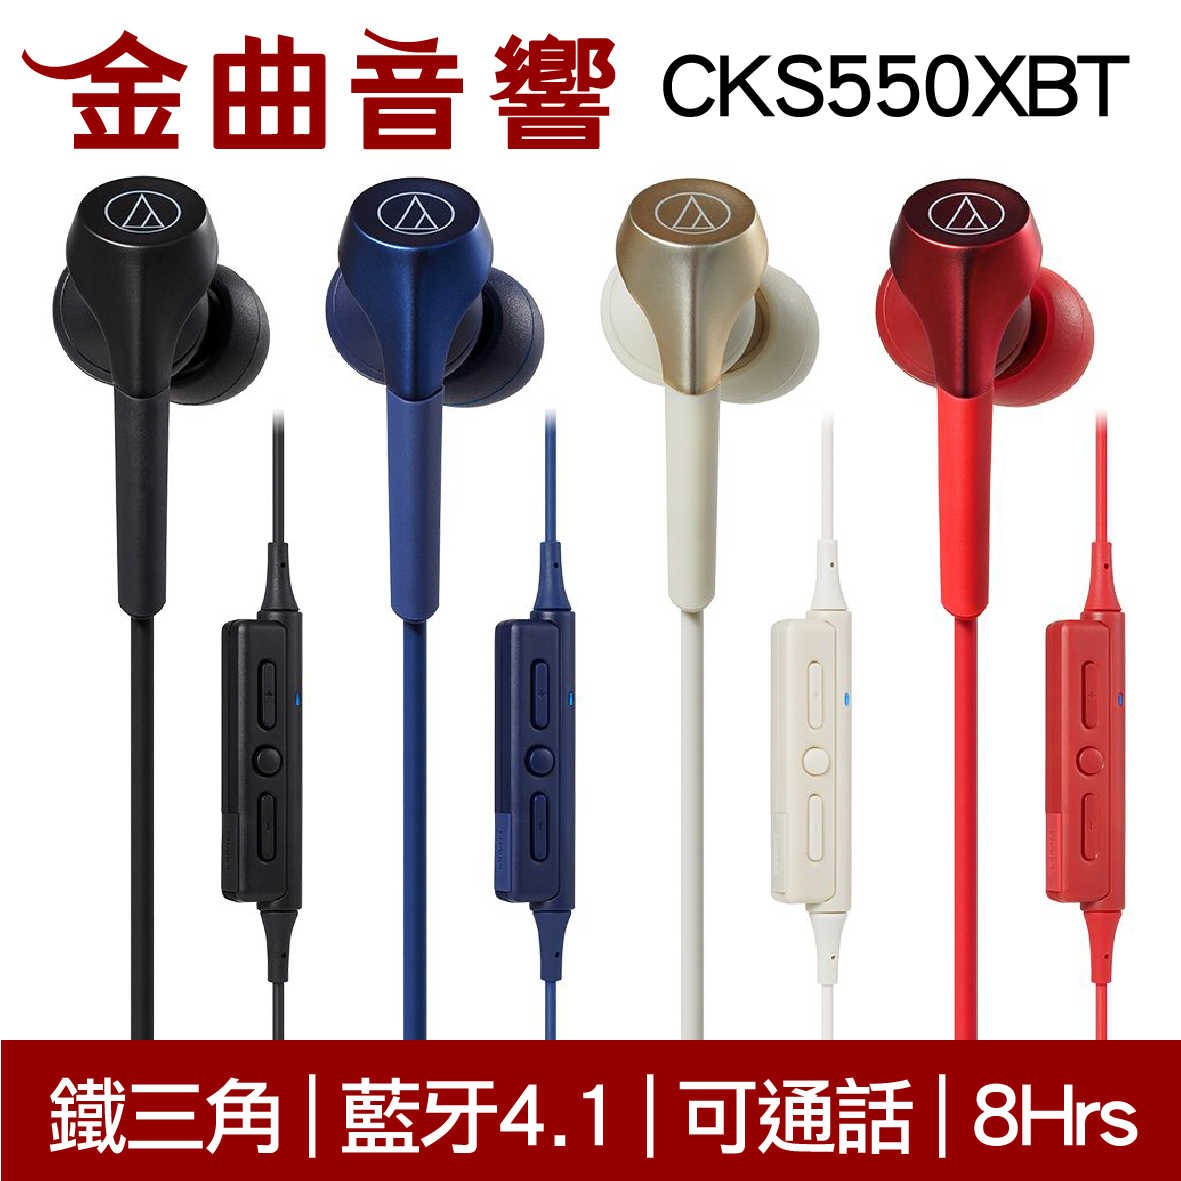 鐵三角 ATH-CKS550XBT 紅色 藍牙 耳道式 耳機 可通話 | 金曲音響